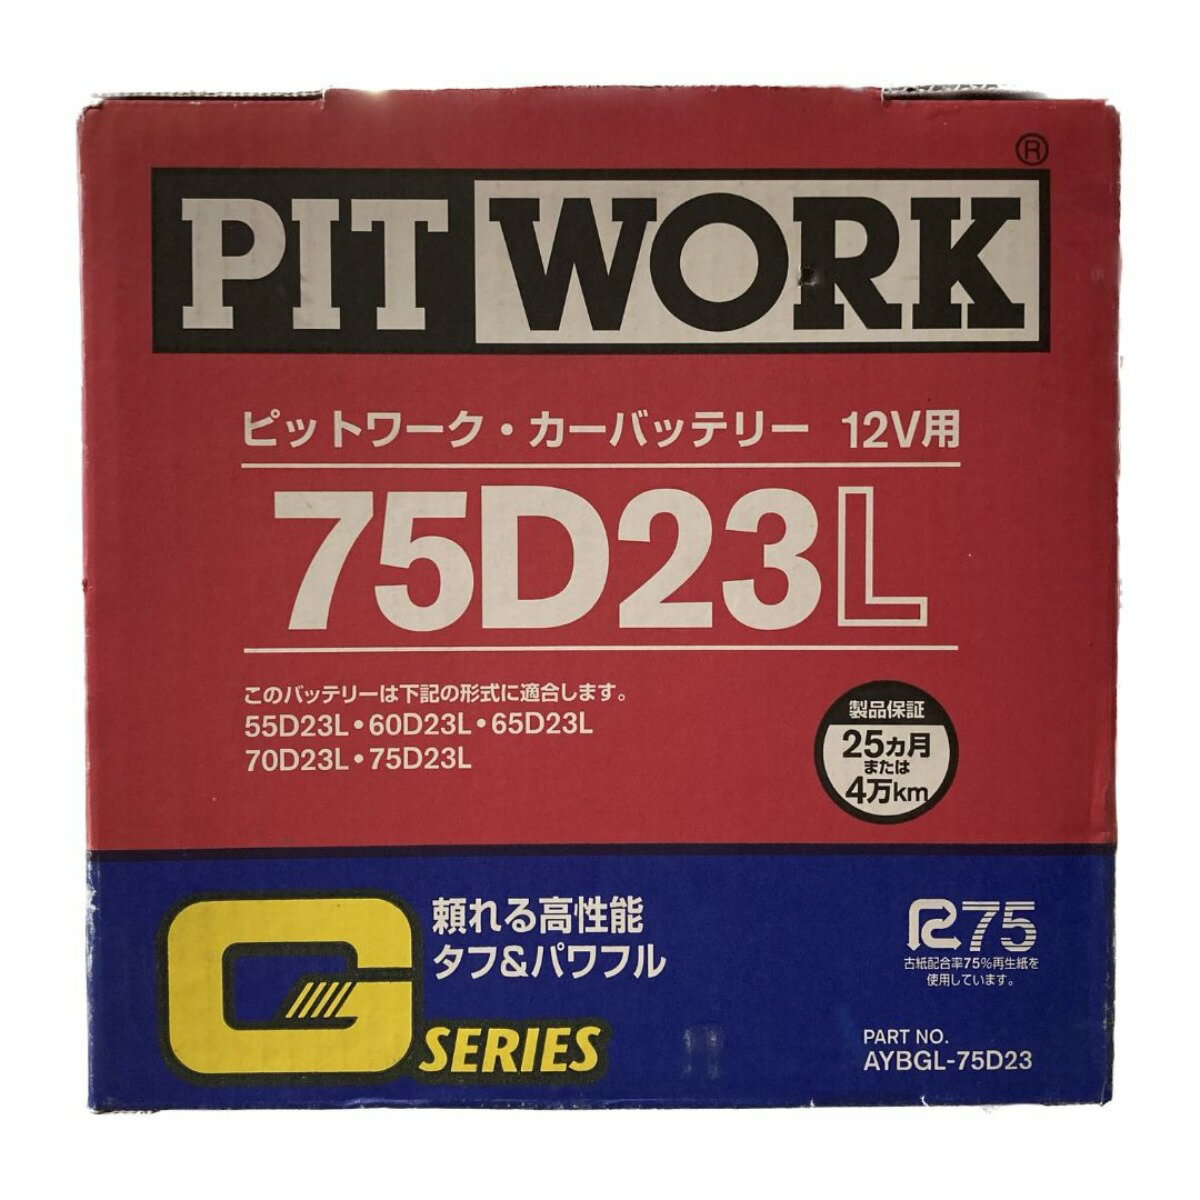 ＊＊【中古】PITWORK ピットワーク 日産純正 カーバッテリー 12V用 スタンダードグレード Gシリーズ 75D23L Sランク